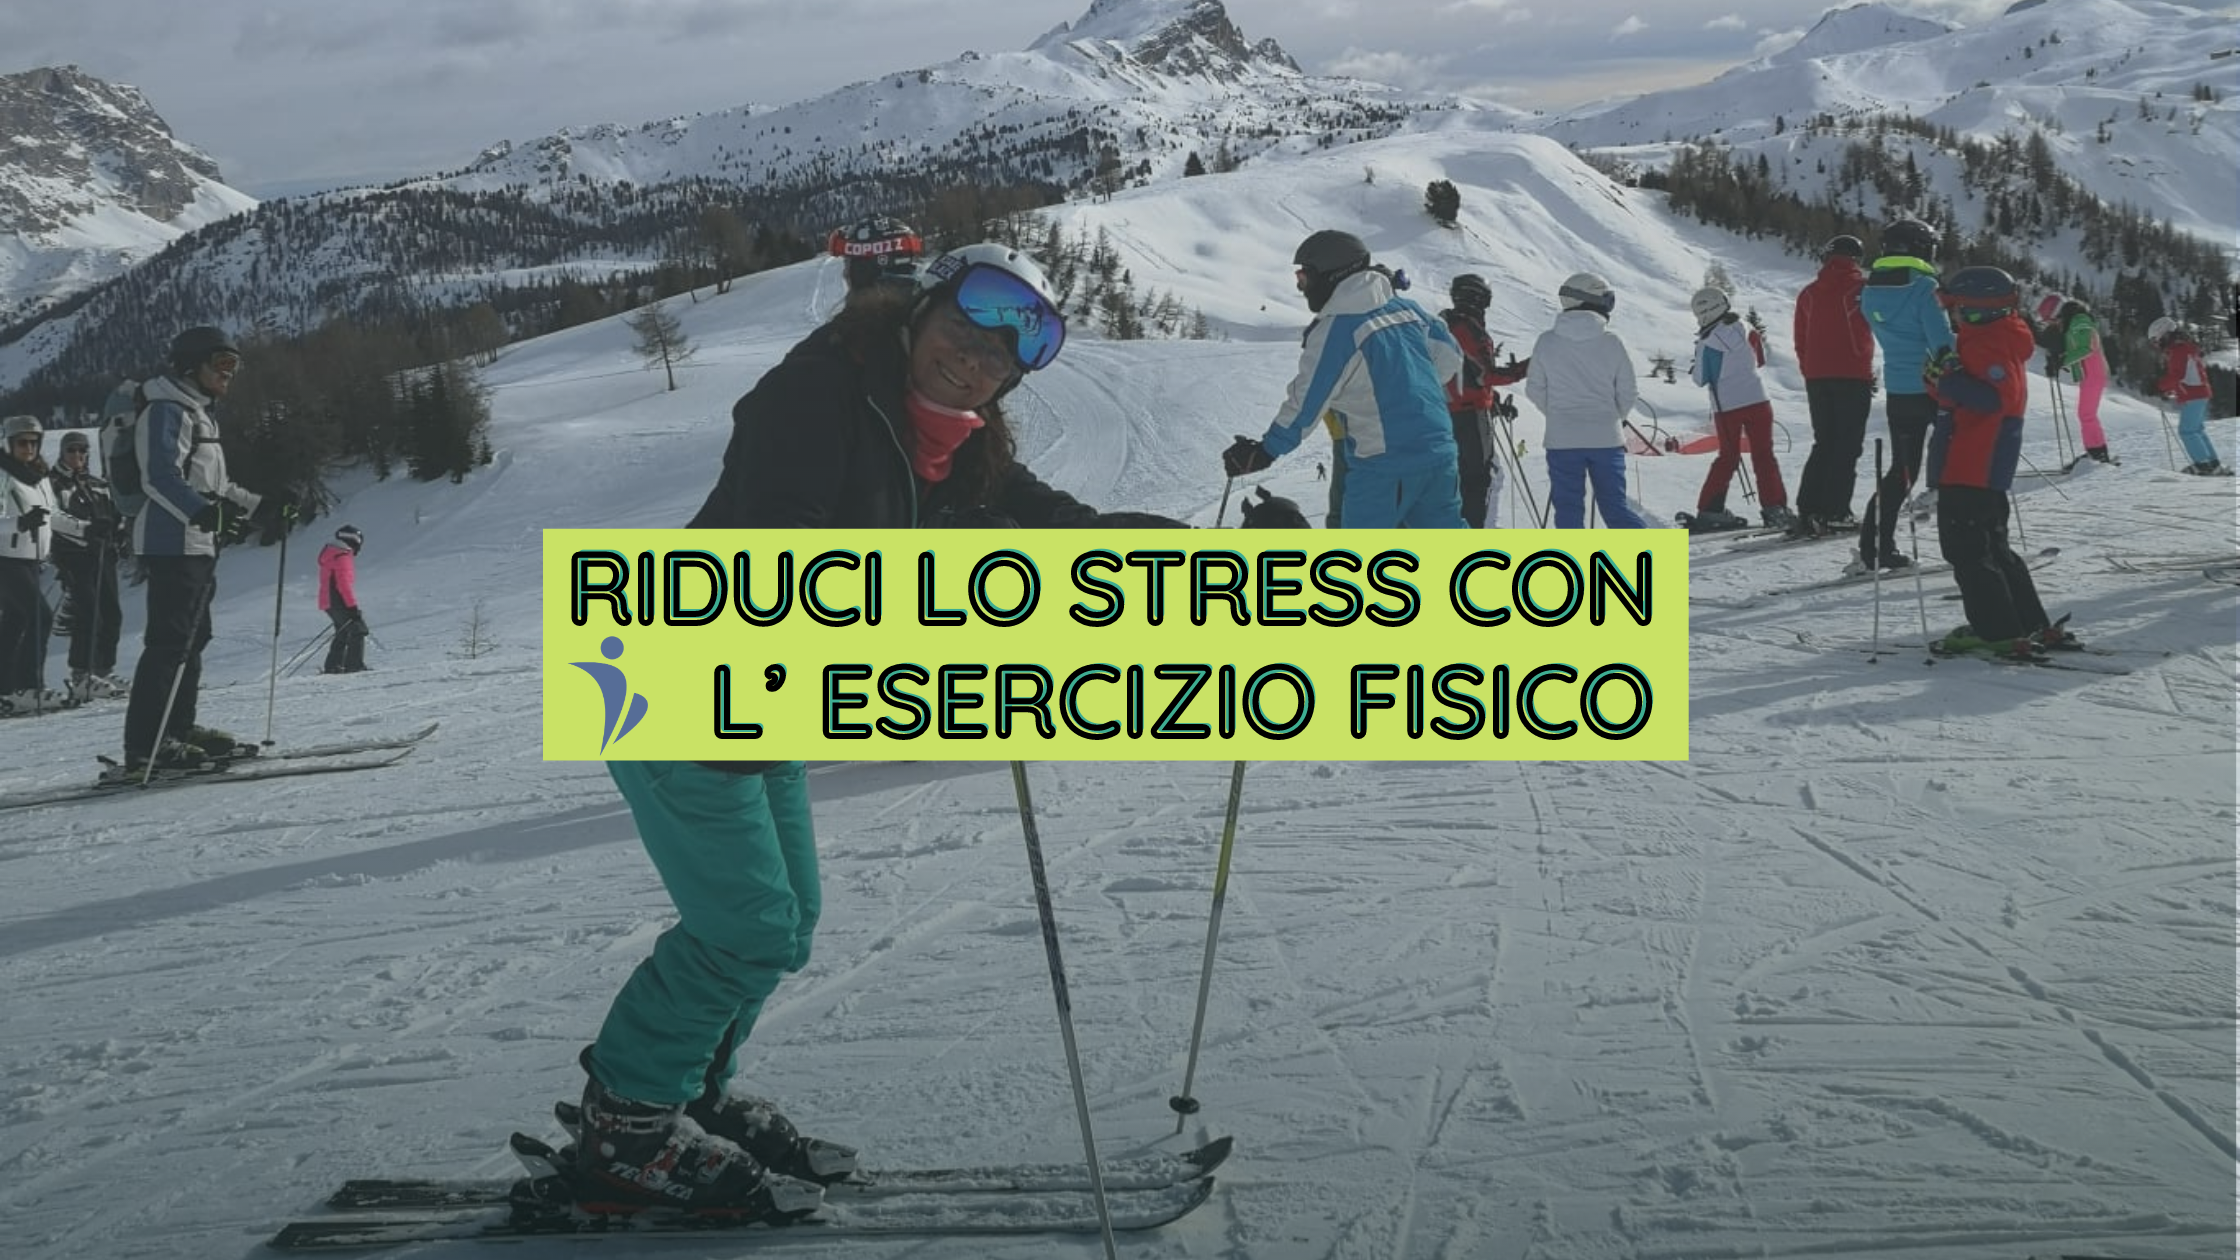 RIDUCI LO STRESS CON L’ESERCIZIO FISICO